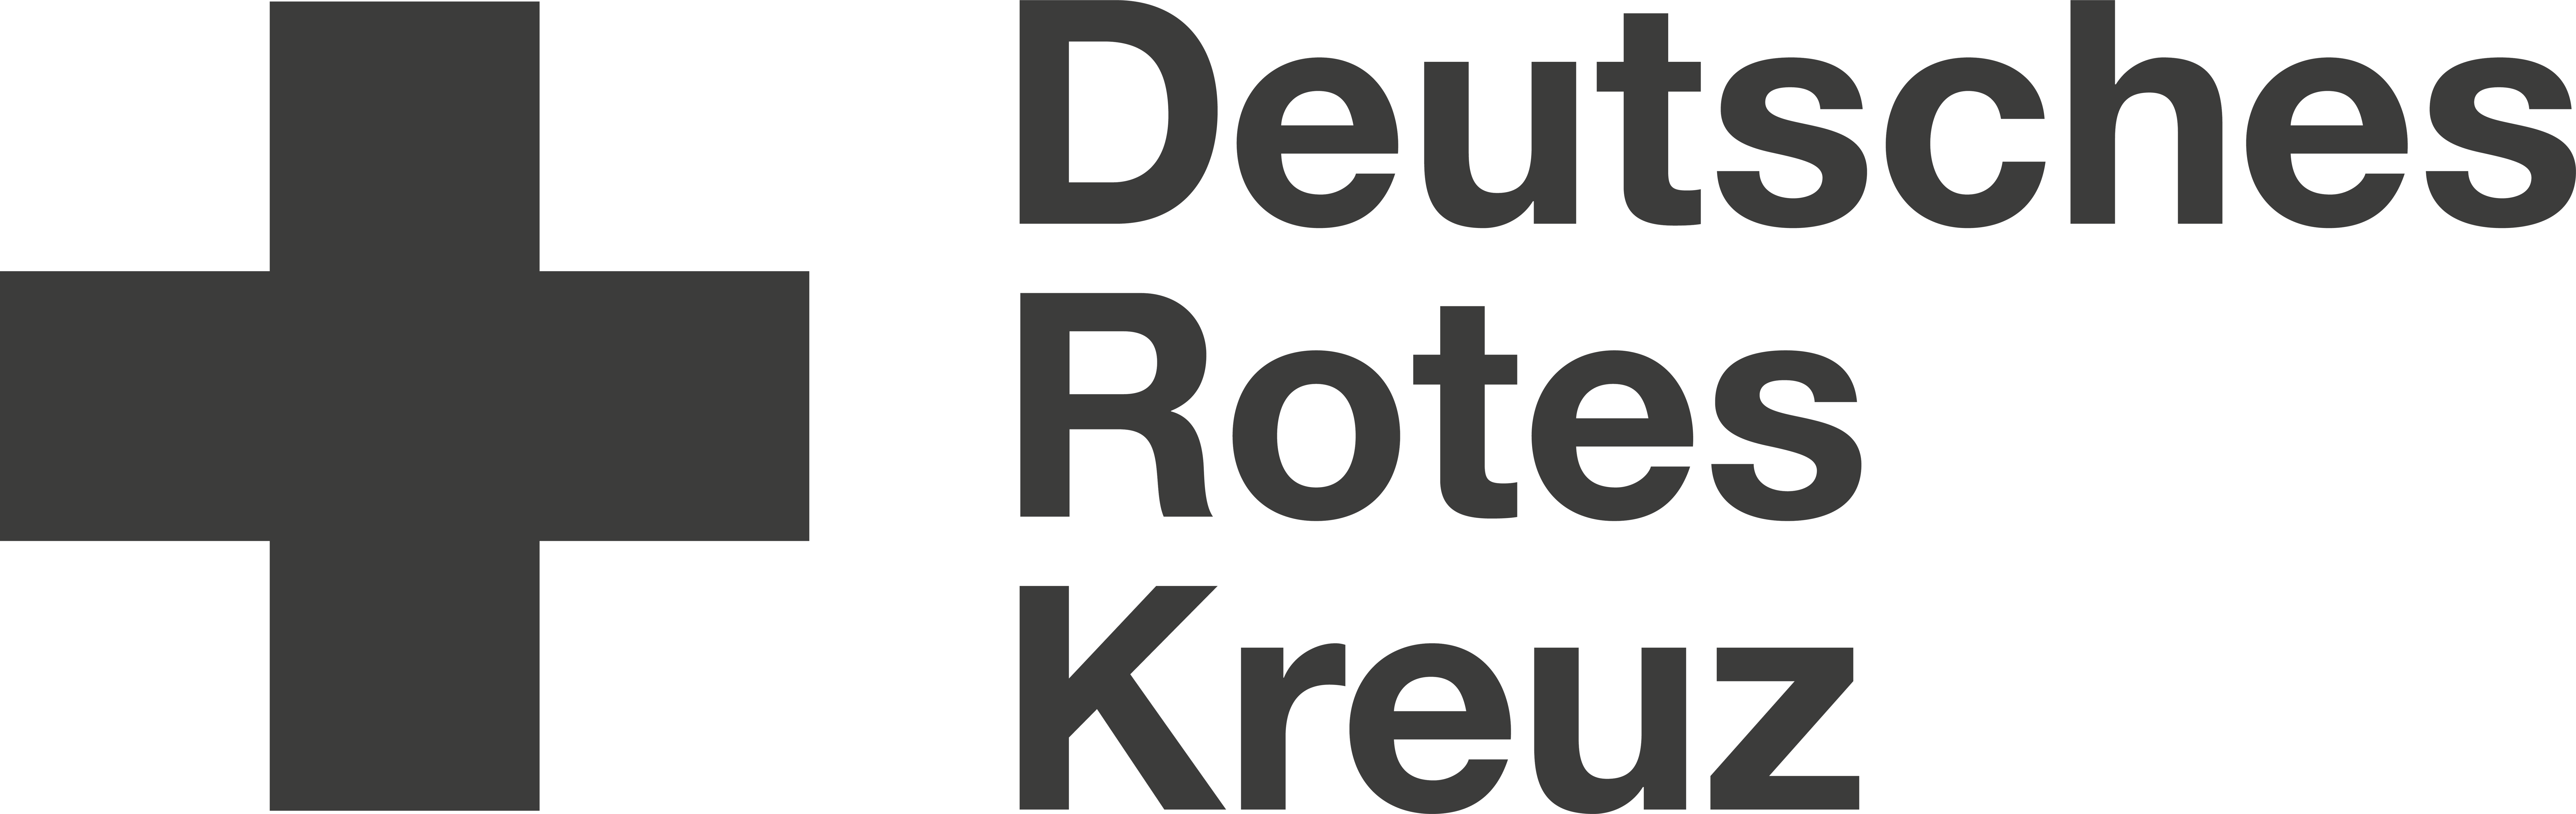 deutsches-rotes-kreuz-seeklogo.com-01